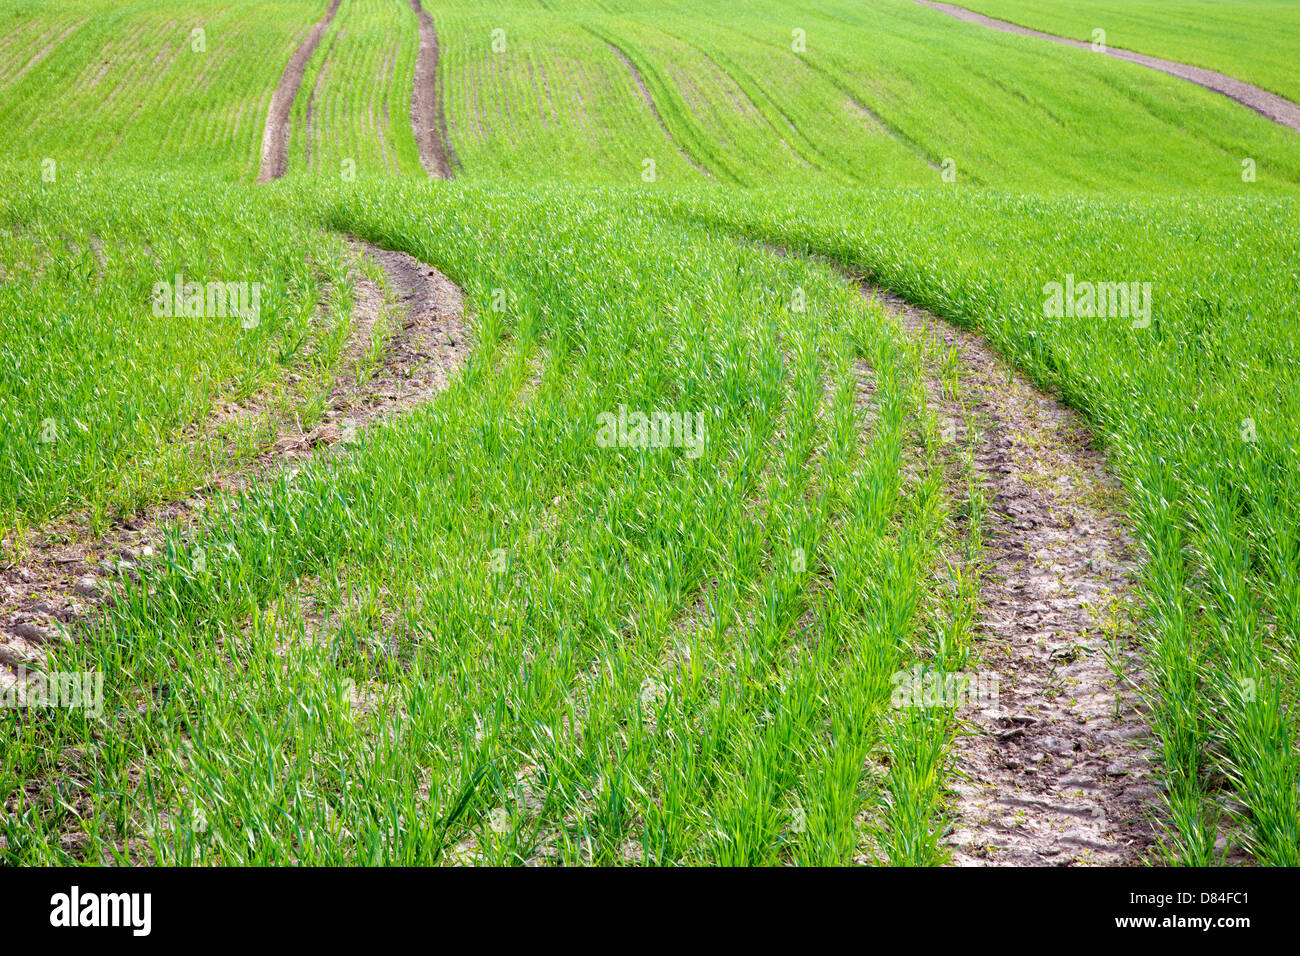 field of grain in spring Stock Photo